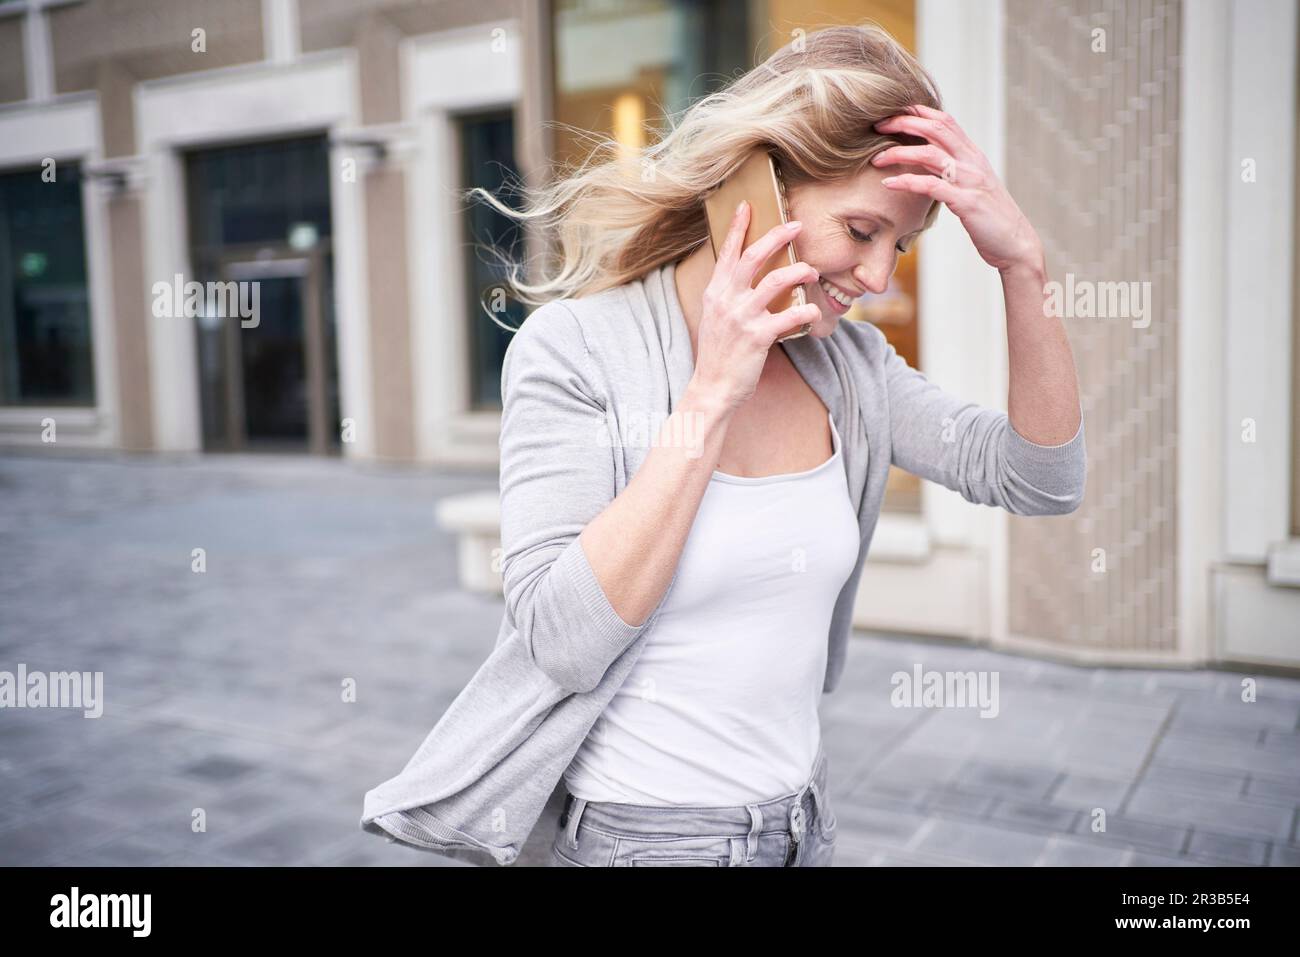 Eine blonde Frau mit einer Hand im Haar, die mit einem Handy spricht Stockfoto